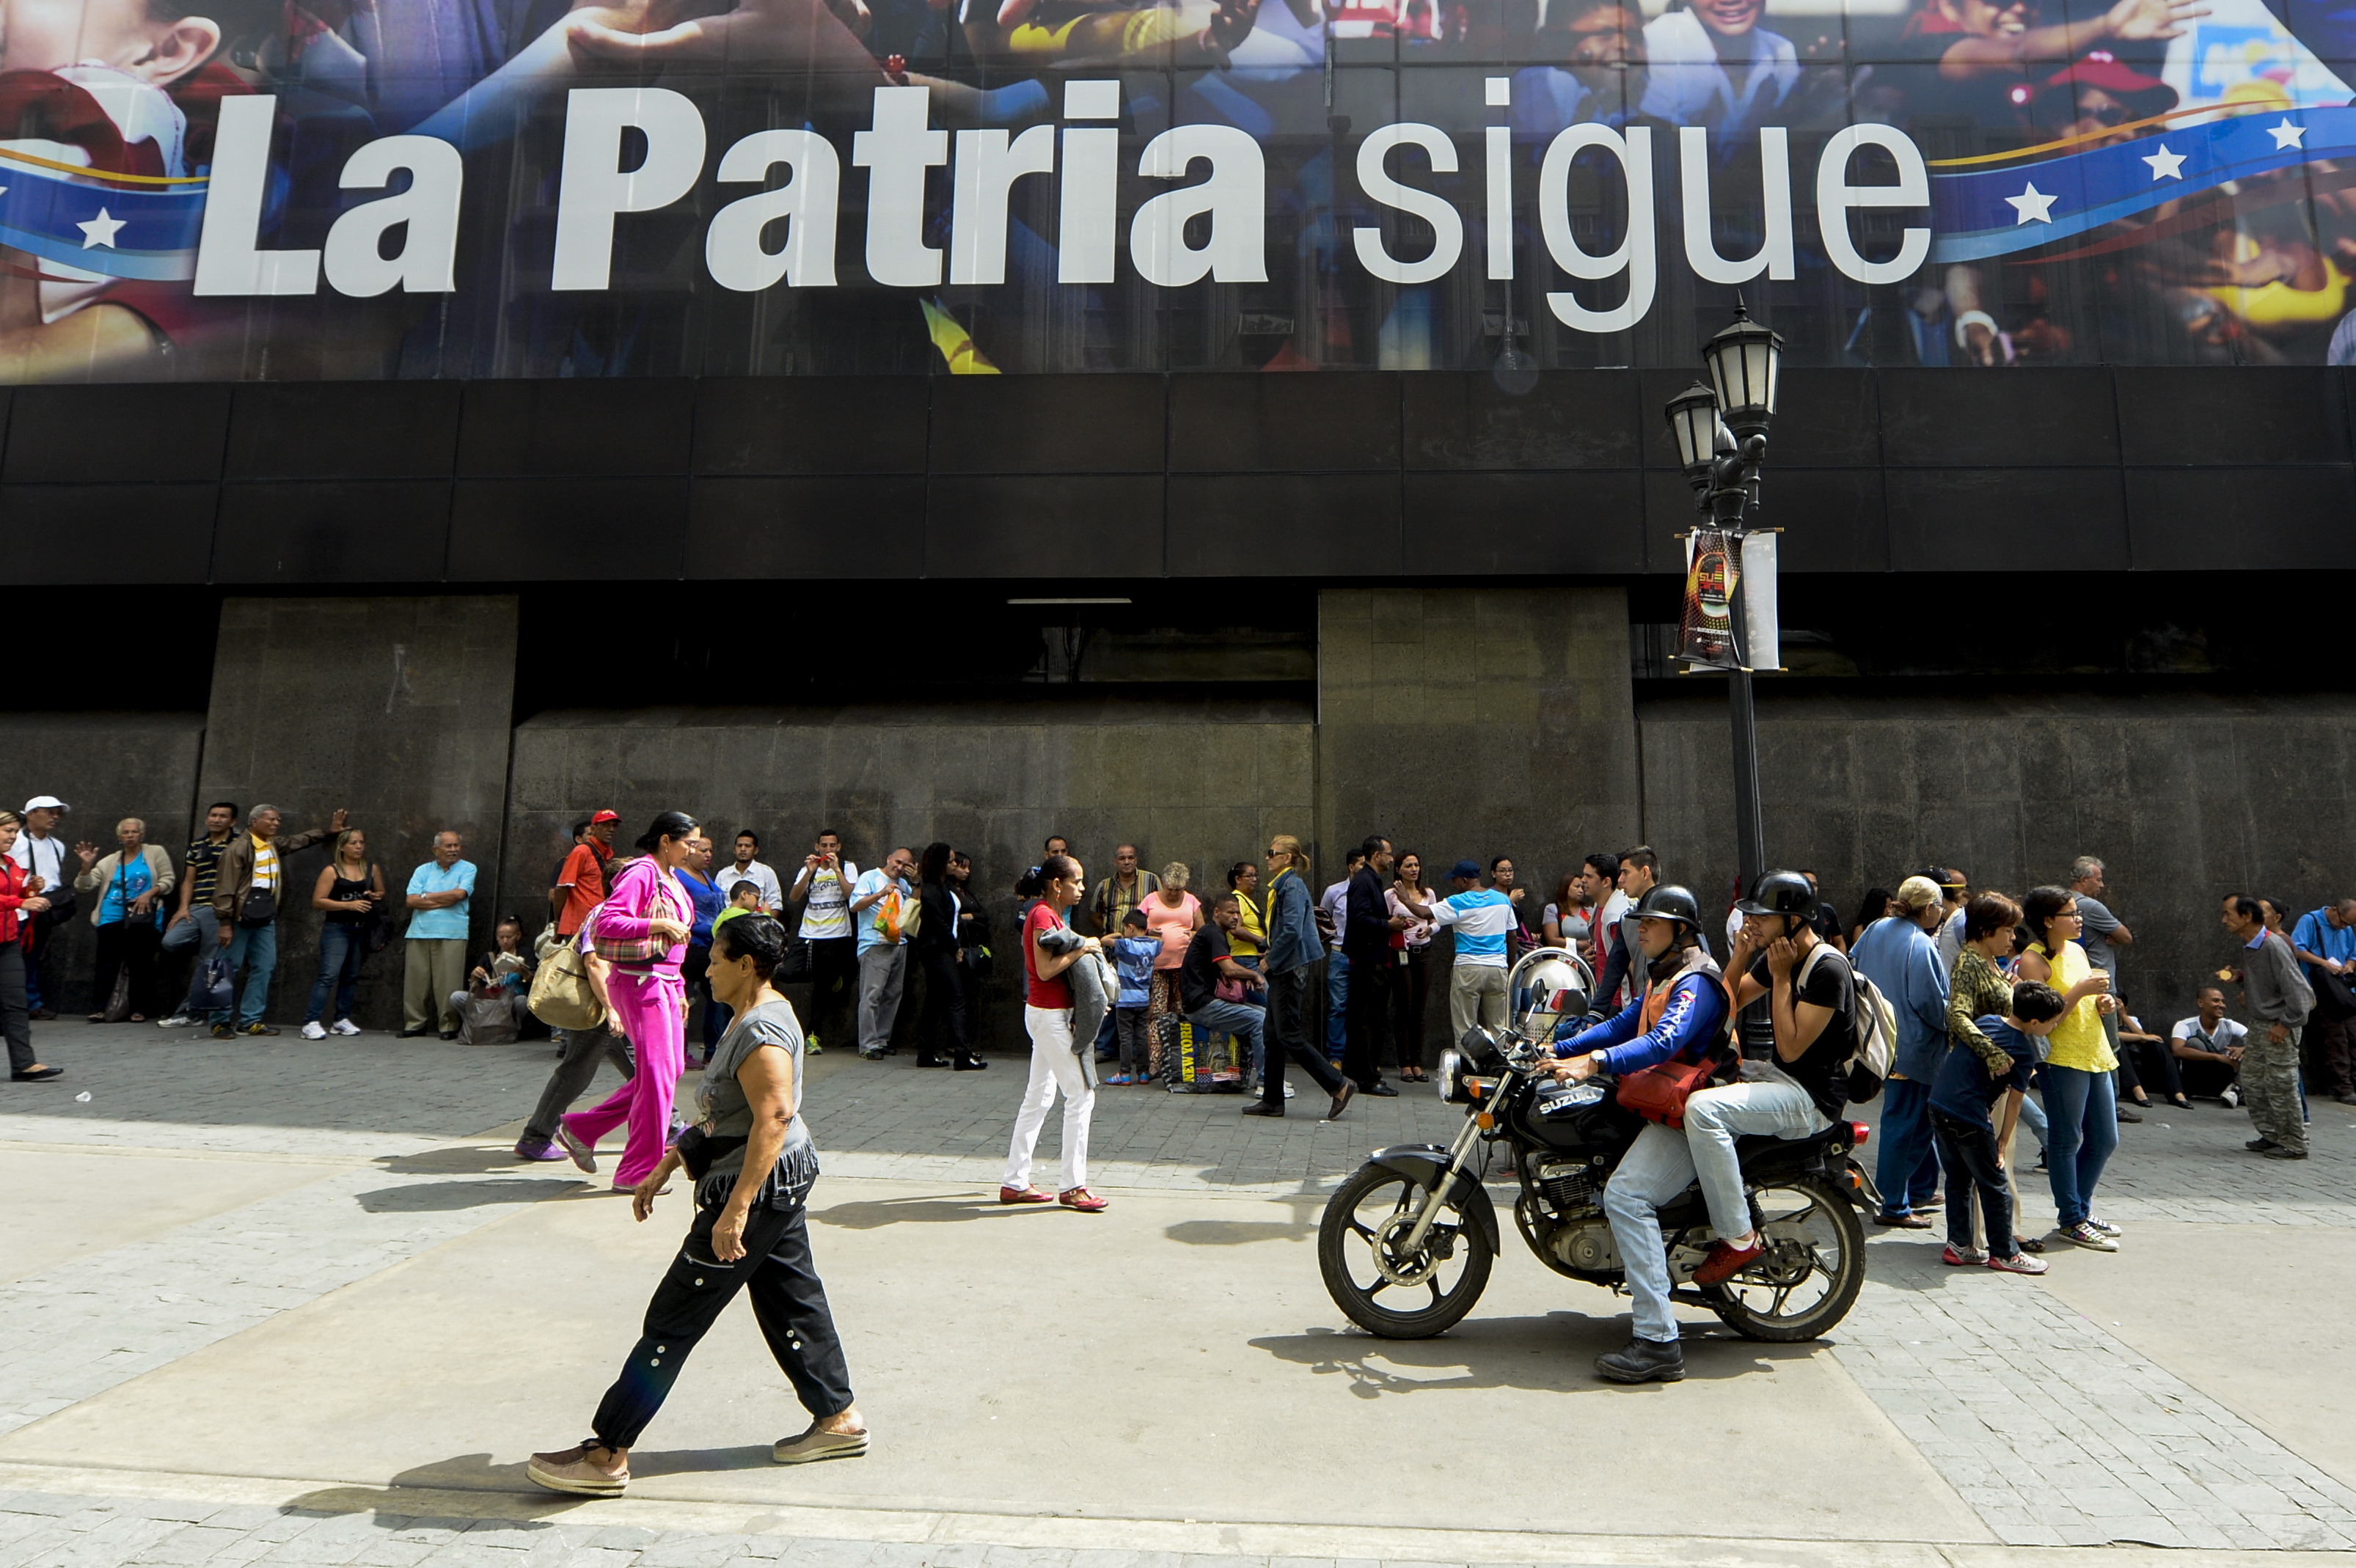 Tömegek állnak a bankok előtt sorba miután Maduro elnök lezáratta a kolumbiai határt, hogy az "ország tönkretételén dolgozó amerikai kommandók" ne juthassanak be